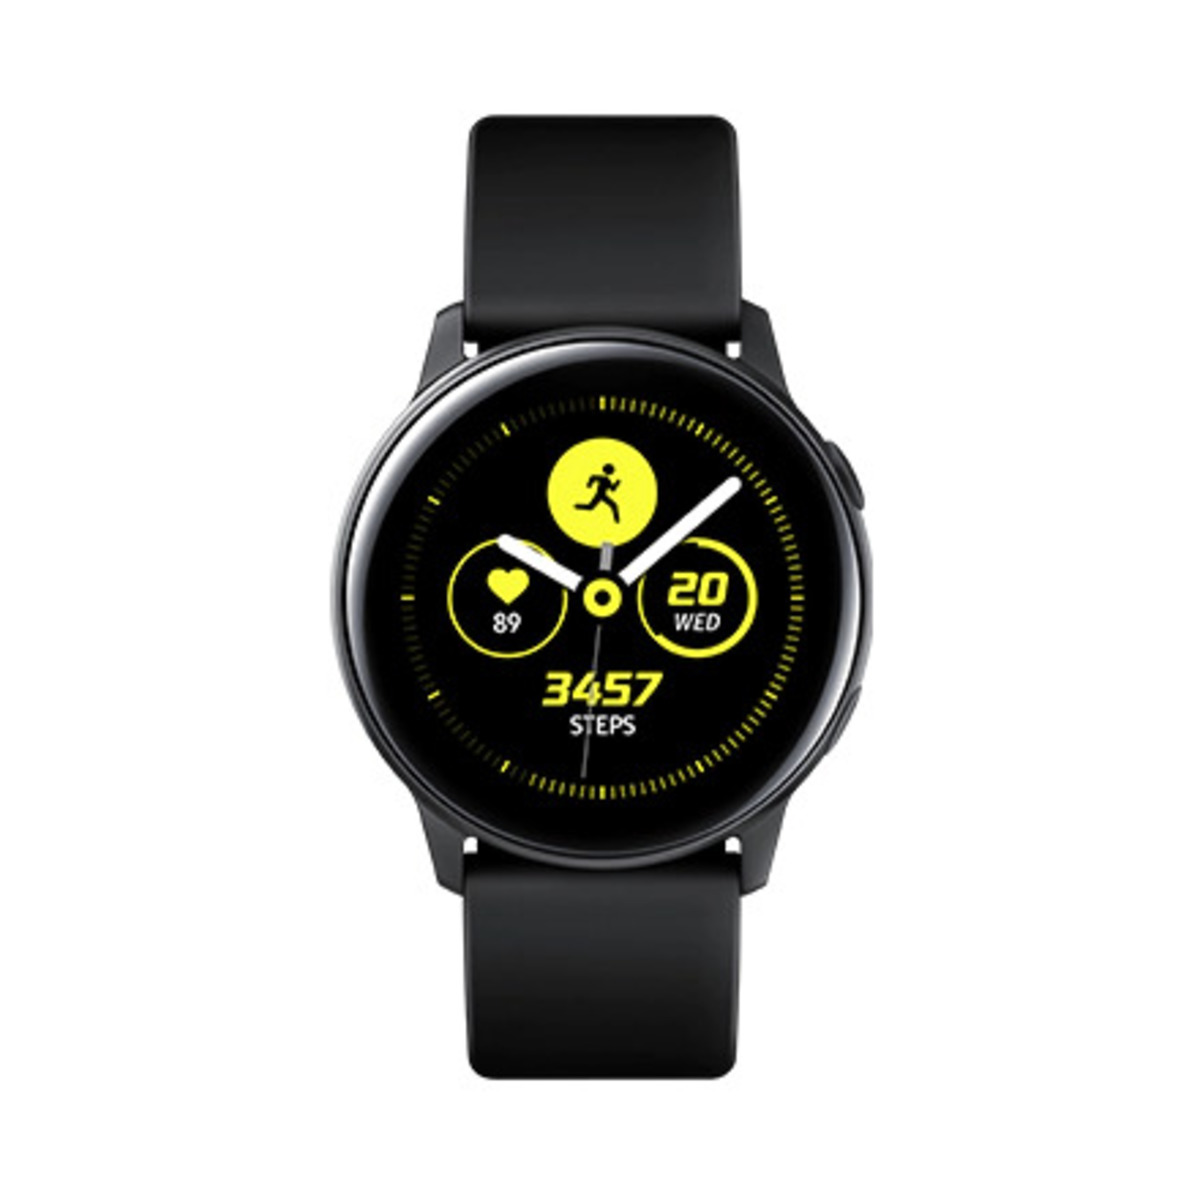 Samsung Galaxy Watch Active Black Online At Best Price Smart Watches Lulu Ksa Price In Saudi